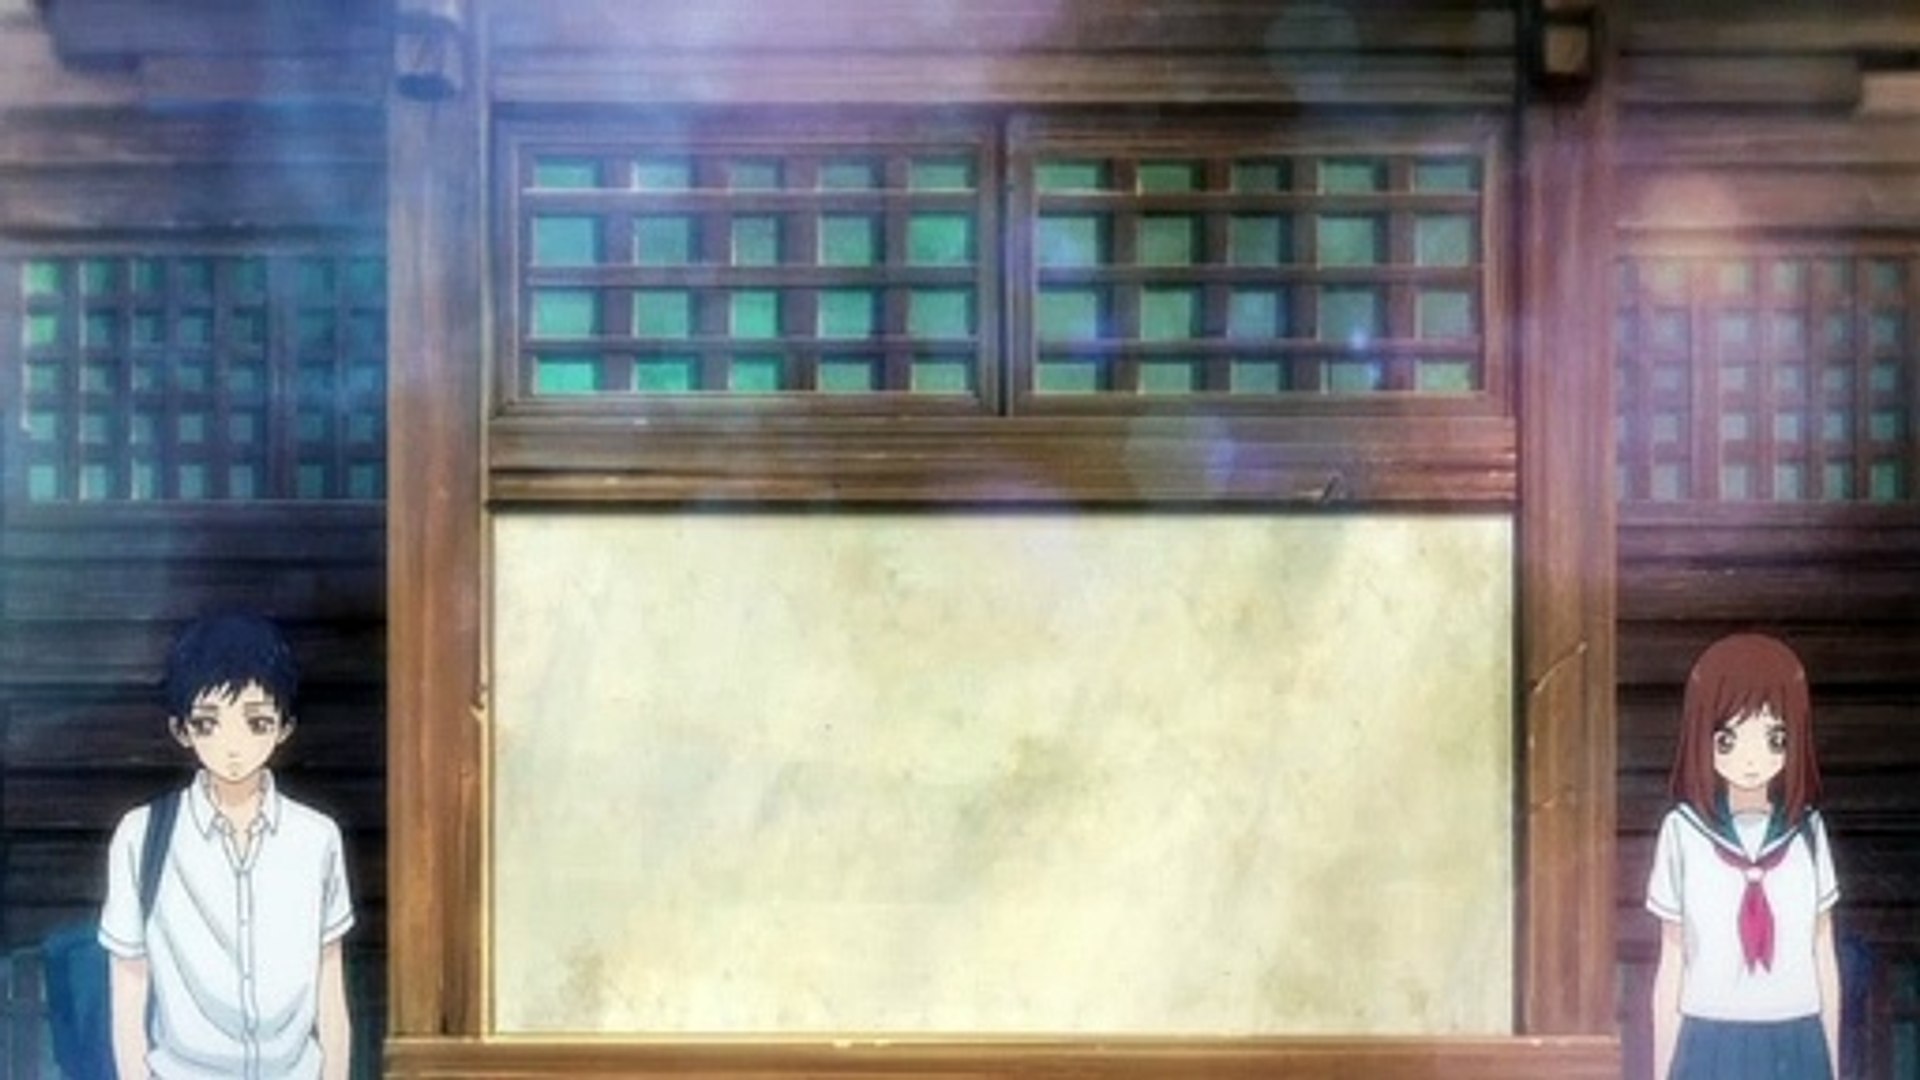 anime environment — Ao Haru Ride / Blue Spring Ride, episode 4